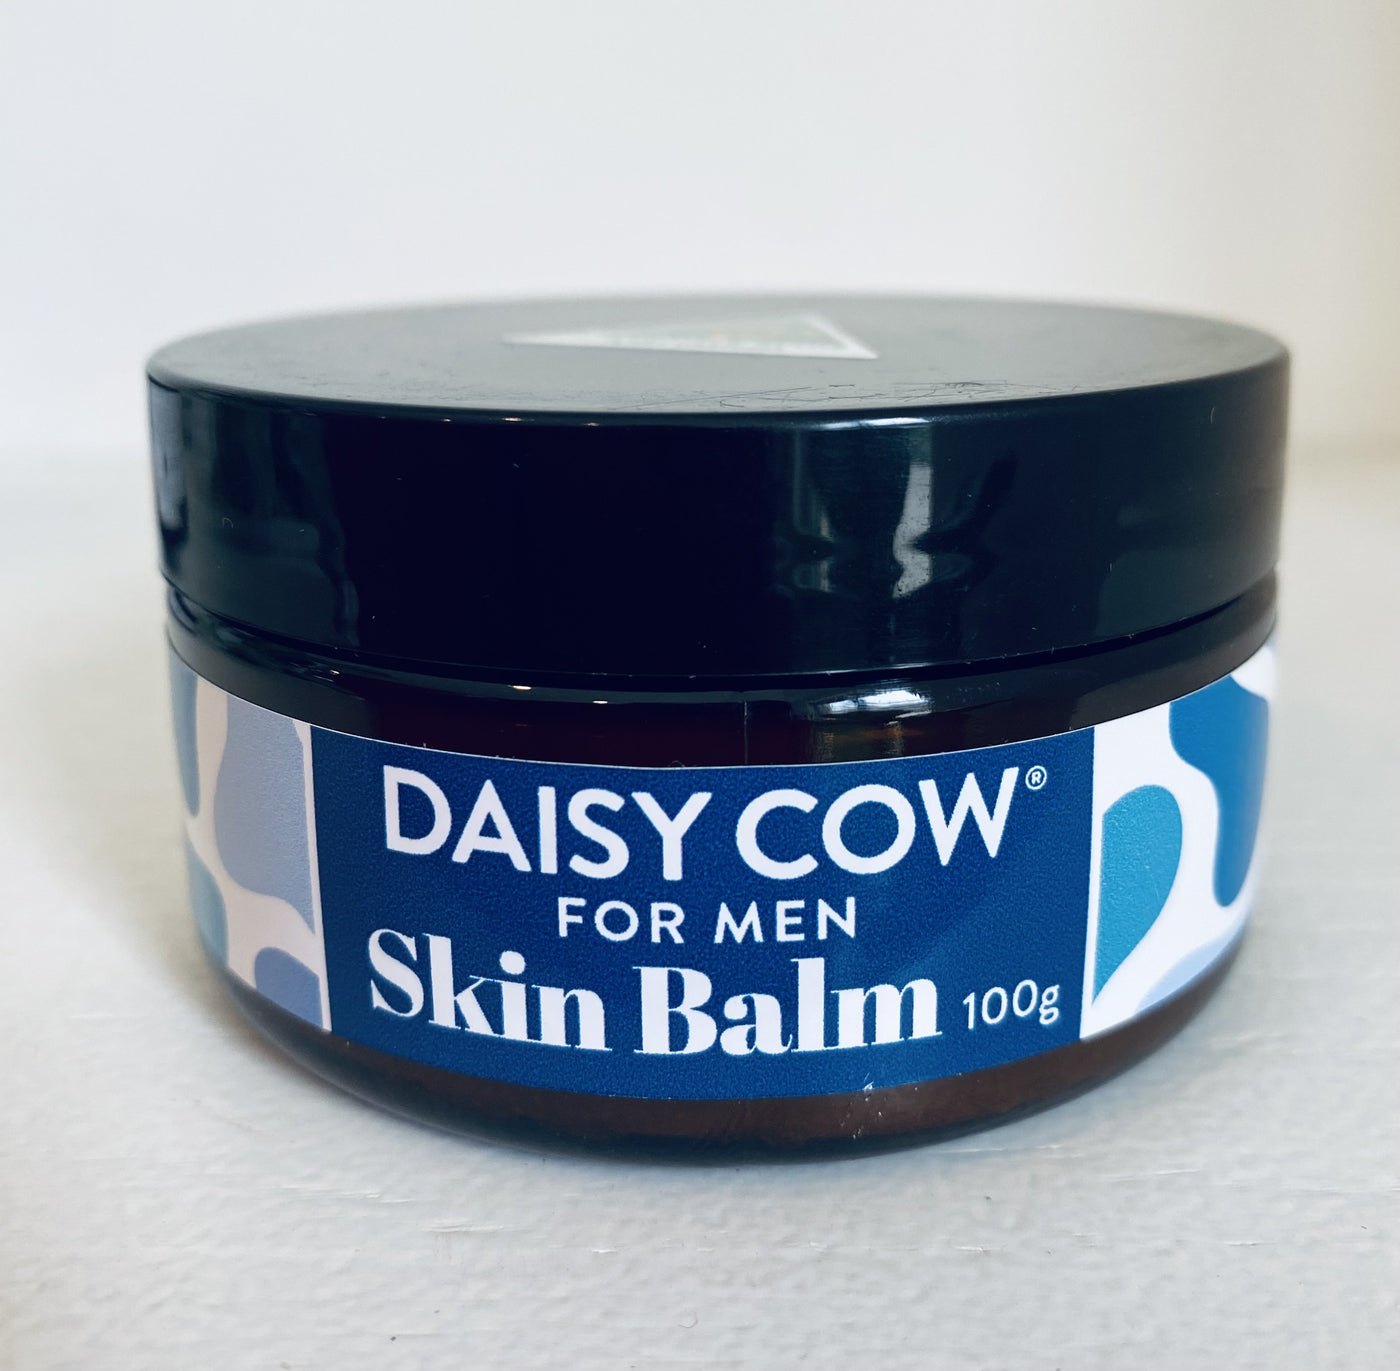 Daisy Cow Men’s Skin Balm 100g tub